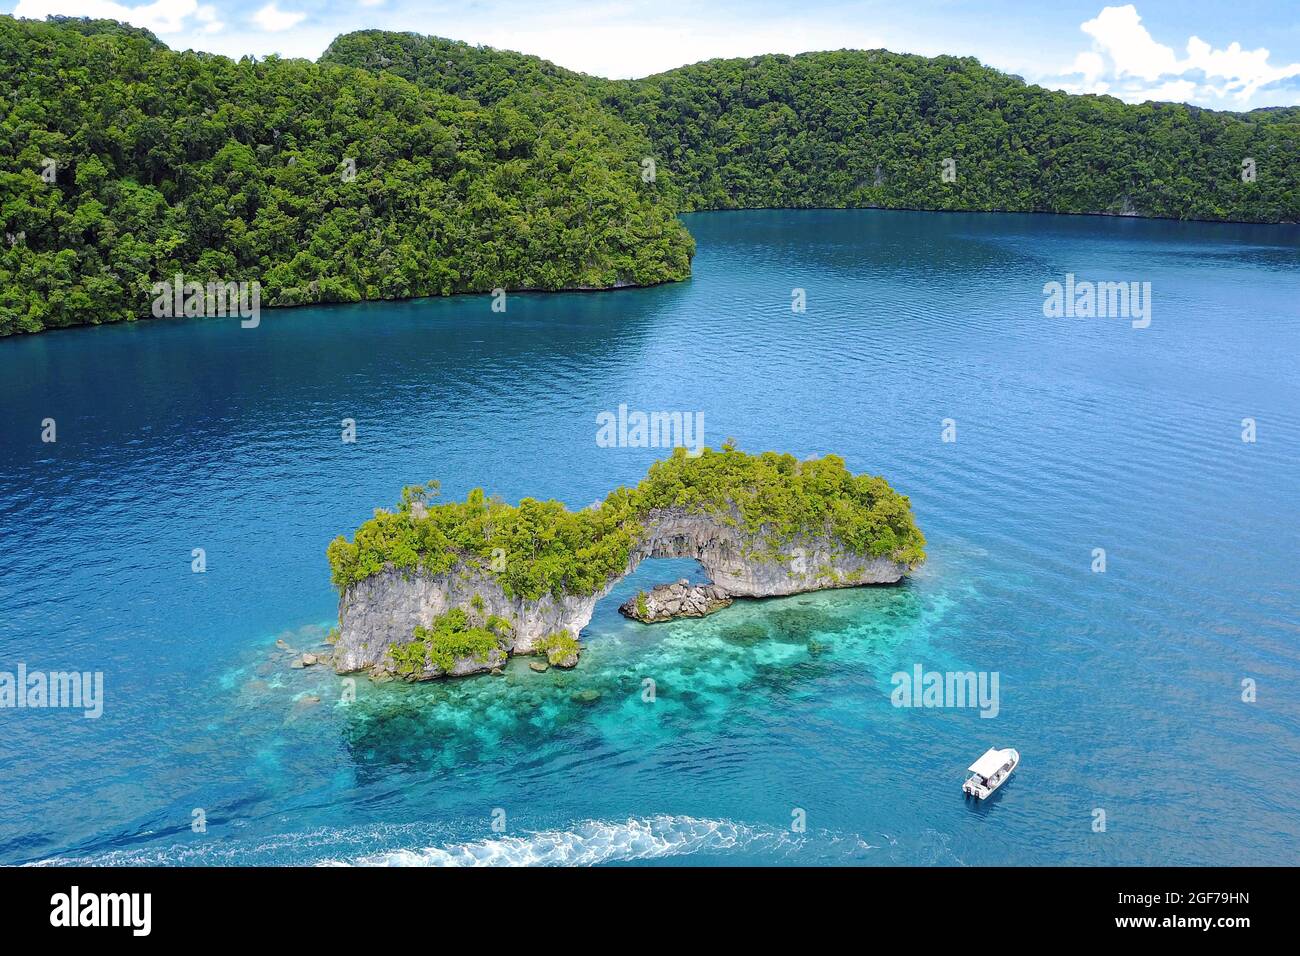 Arco di roccia nella laguna di Palau, Oceano Pacifico, Repubblica di Palau Foto Stock